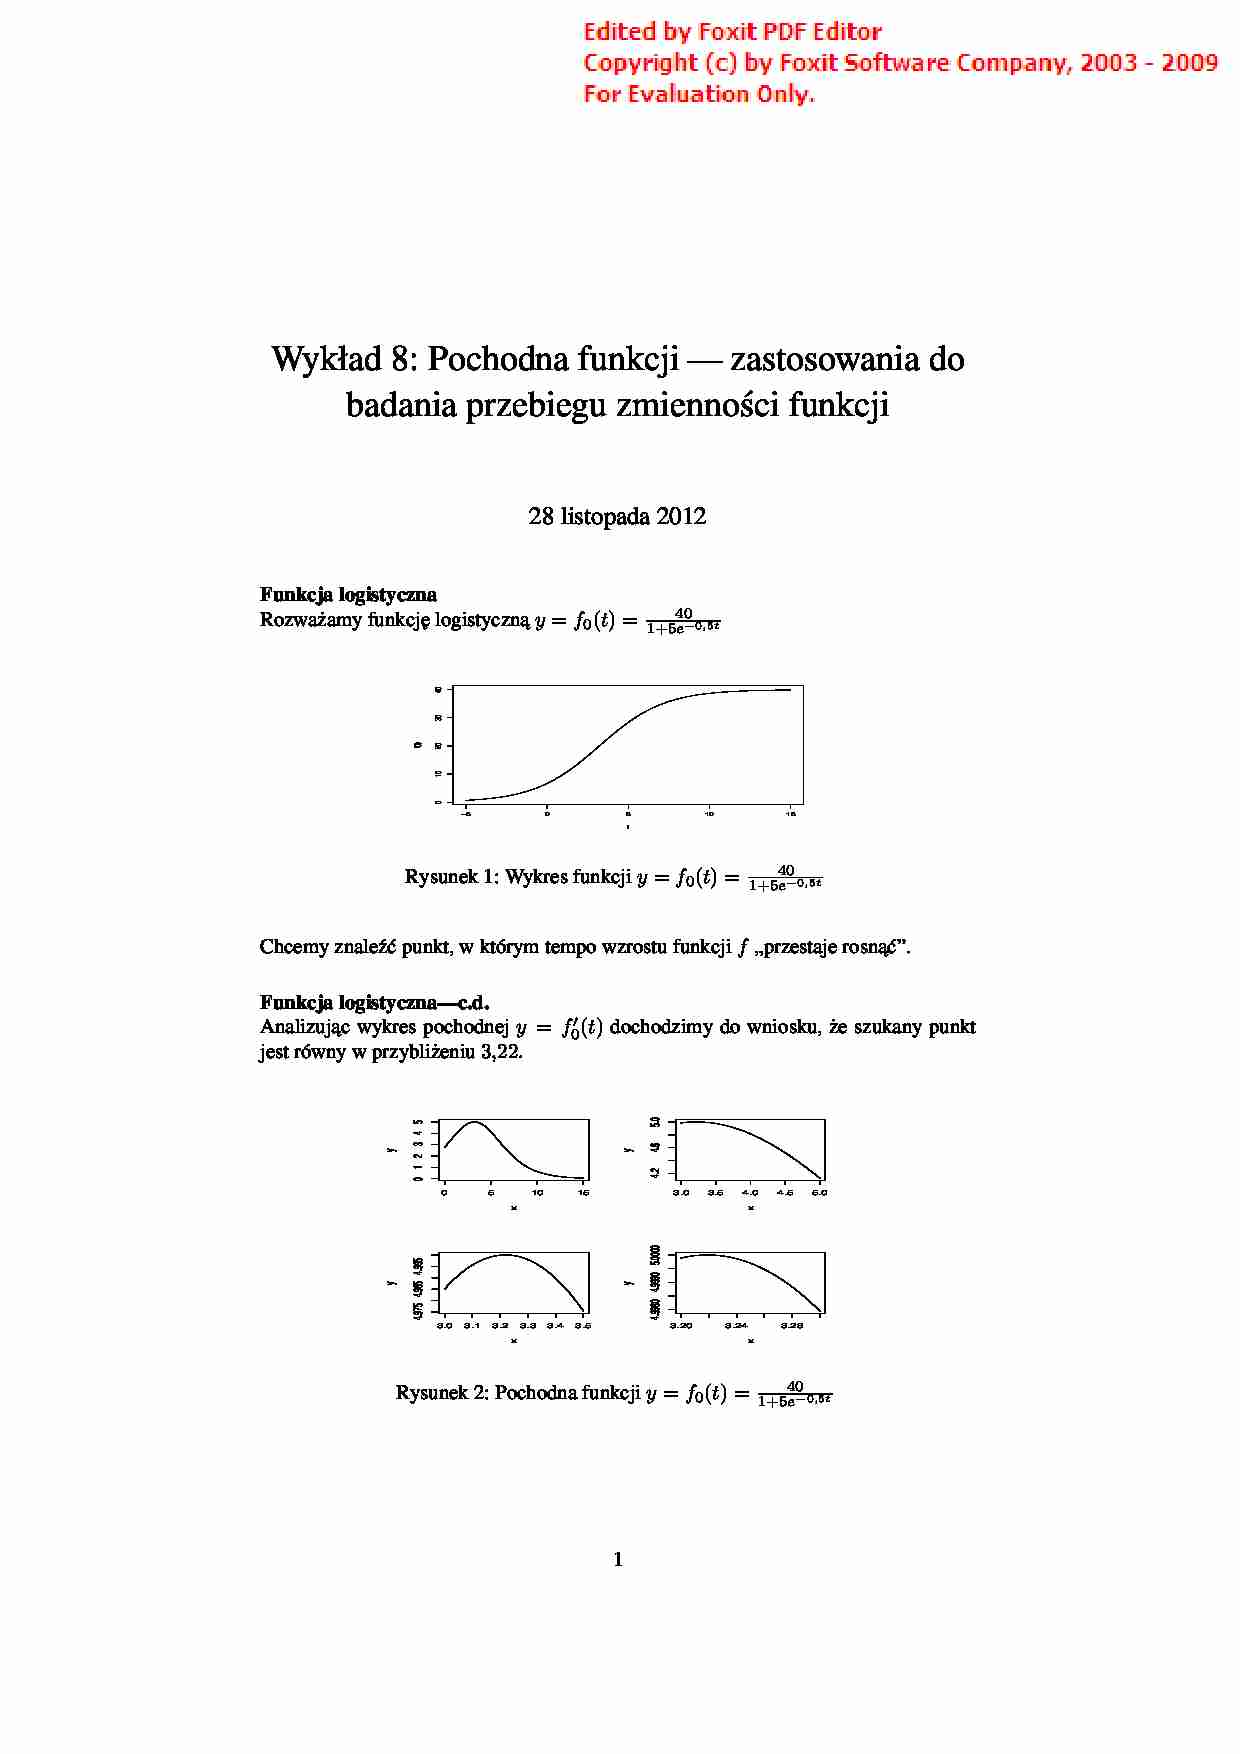 Pochodna funckji - zastosowania do badania przebiegu zmienności funkcji - strona 1